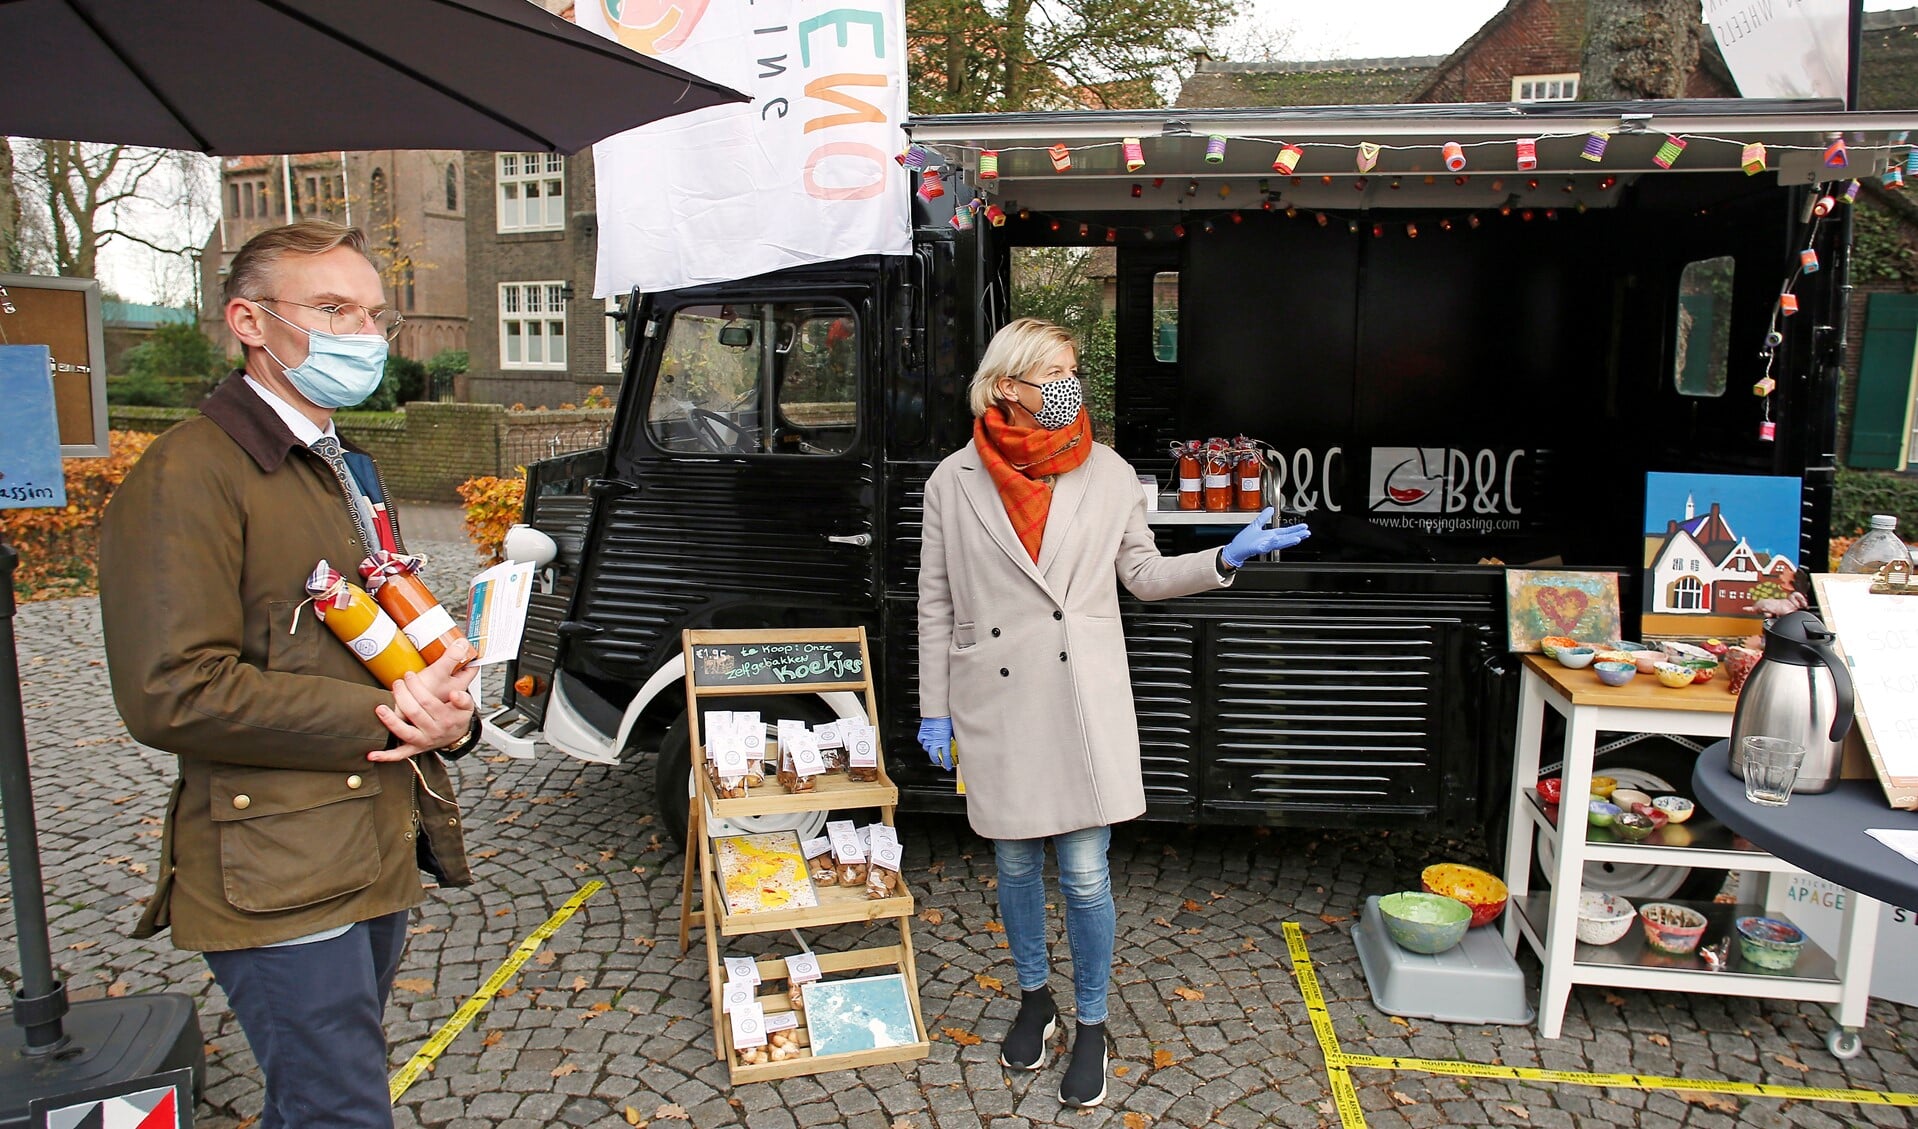 Burgemeester Nanning Mol bezoekt de pop-up bus en neemt twee smakelijke soepjes mee naar huis